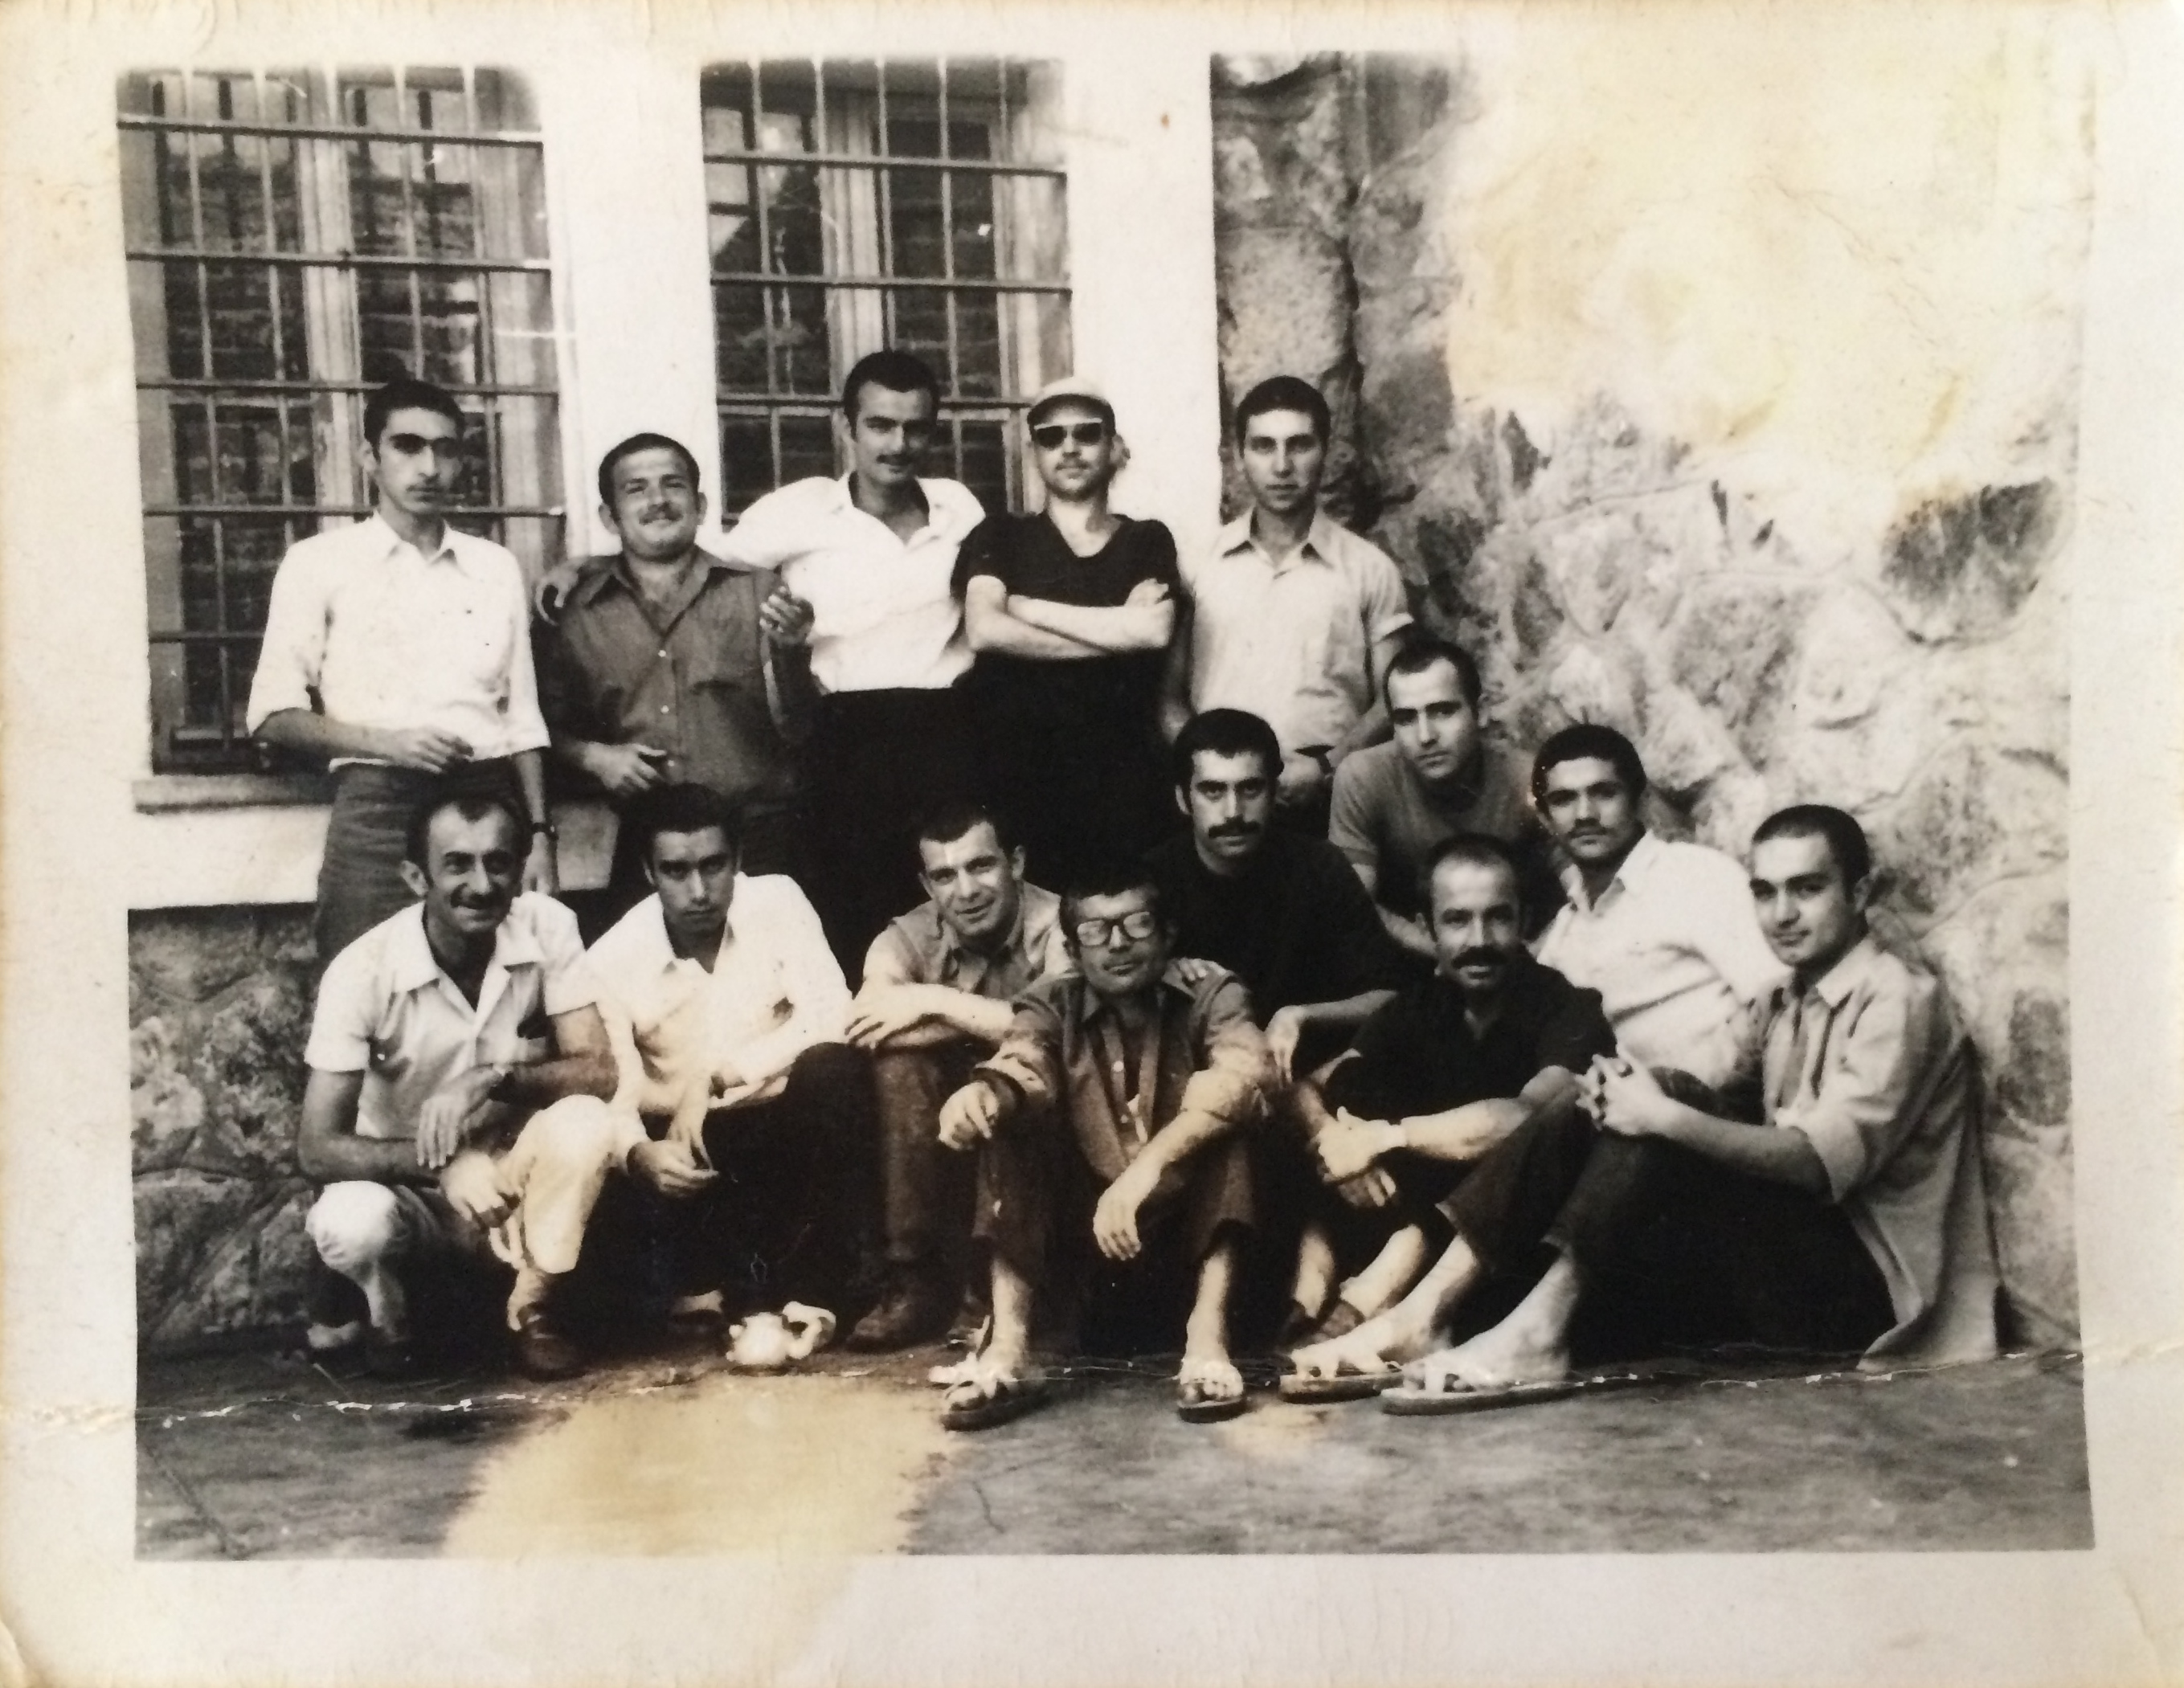 Mamak Cezaevi'nden, Erdal Öz, Sarp Kuray, Mahir Sayın, Ruhi Koç, Cemal Selman Pakoğlu ve Metin Ayçiçek'le birlikte Mustafa Kaçaroğlu (sağ duvara yaslanmış, yukarıdan ikinci) 